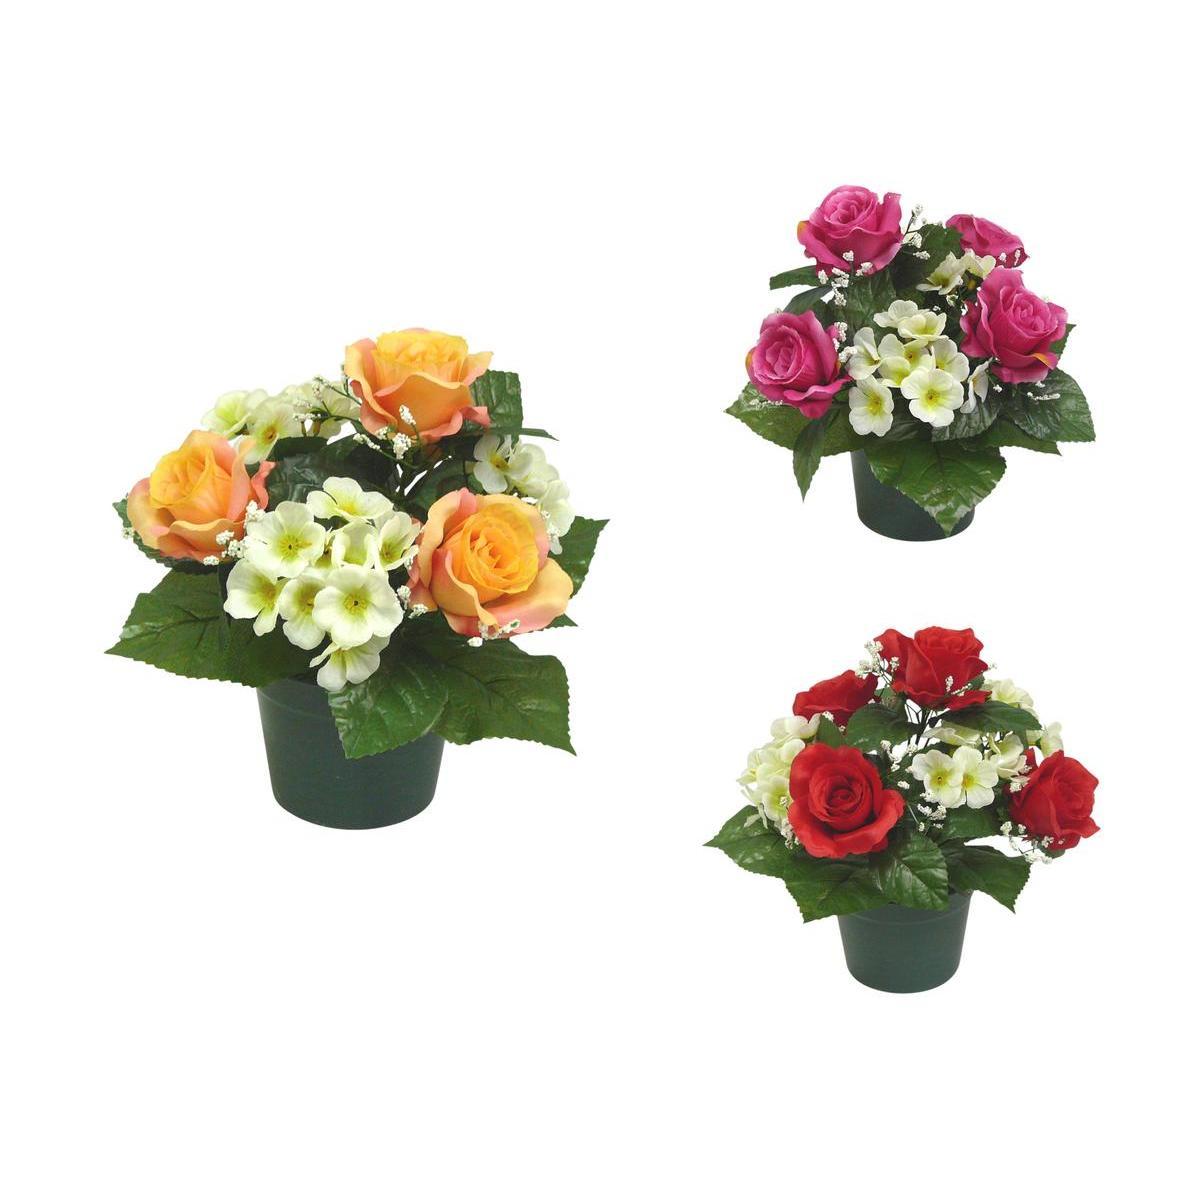 Potée de roses et hortensias - Plastique - Ø 12 x H 27 cm - Différents coloris